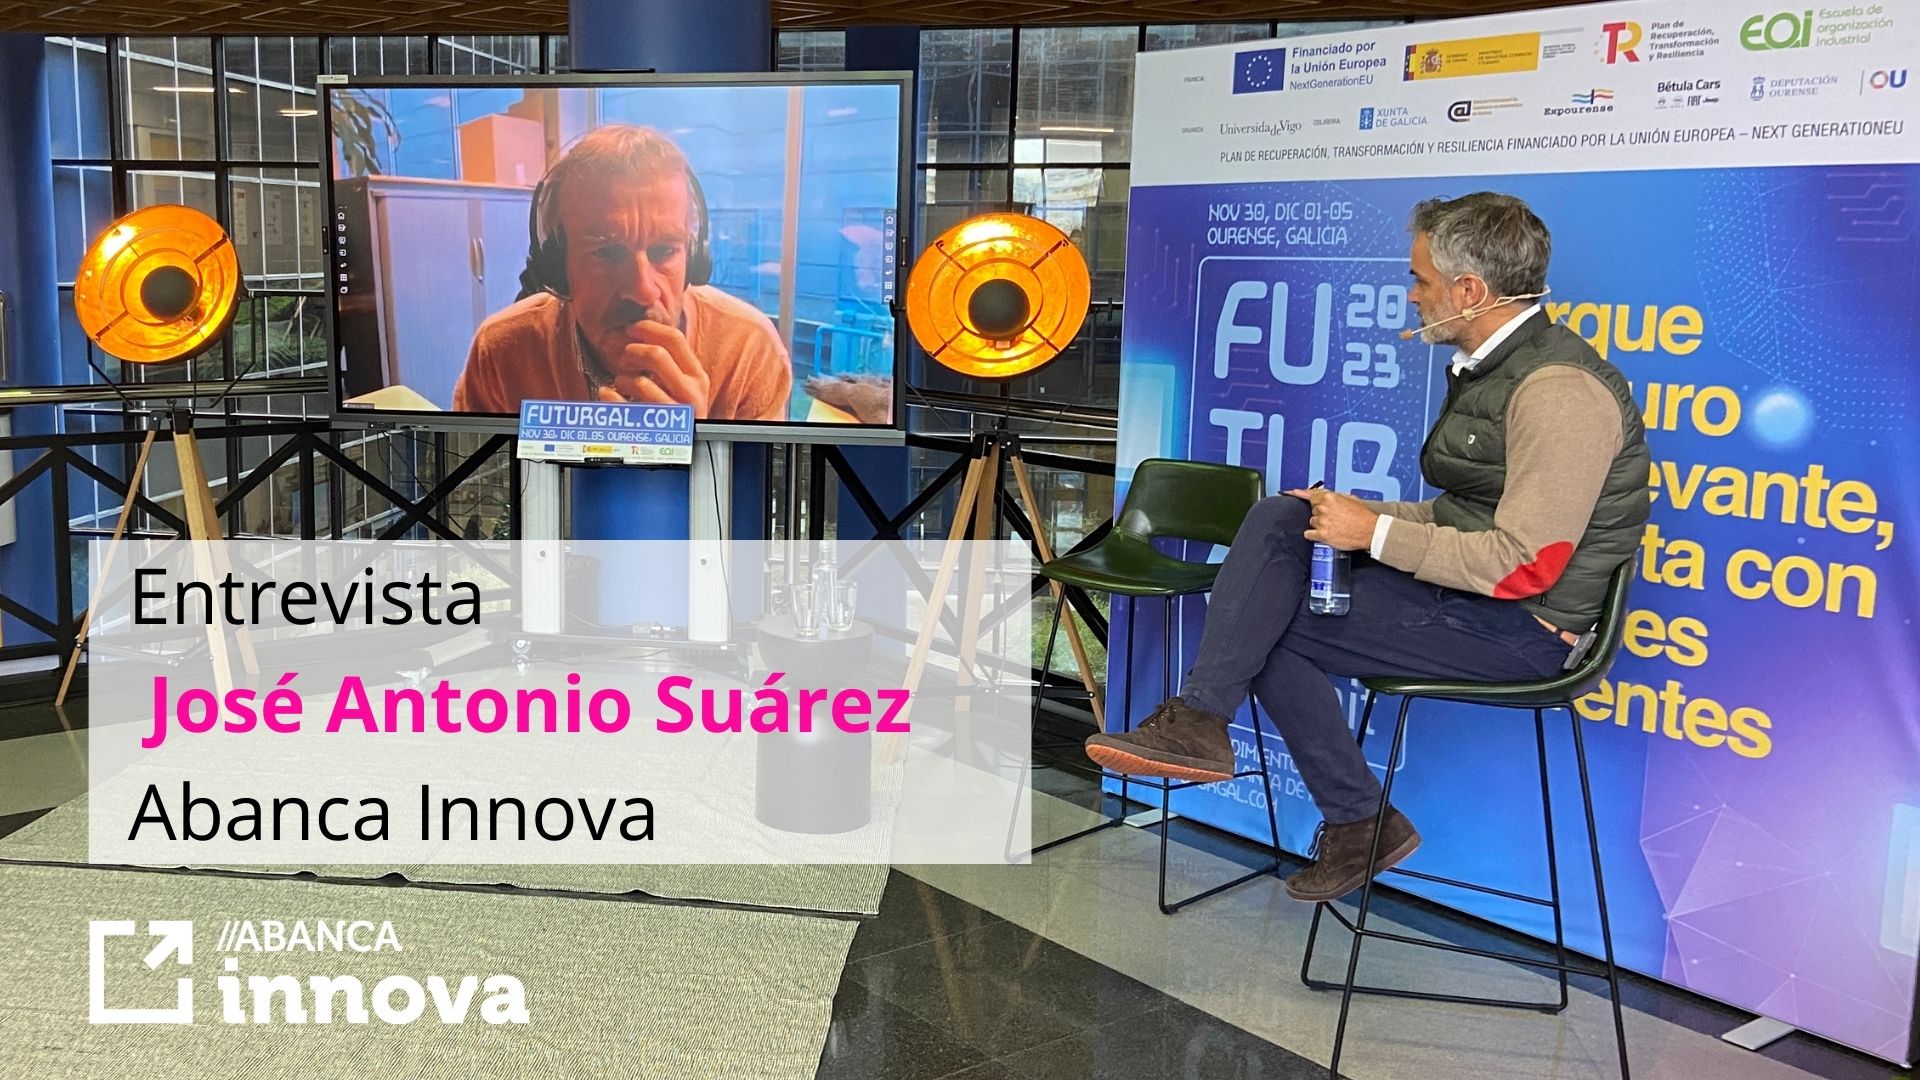 Entrevista José Antonio Suárez en FUTURGAL